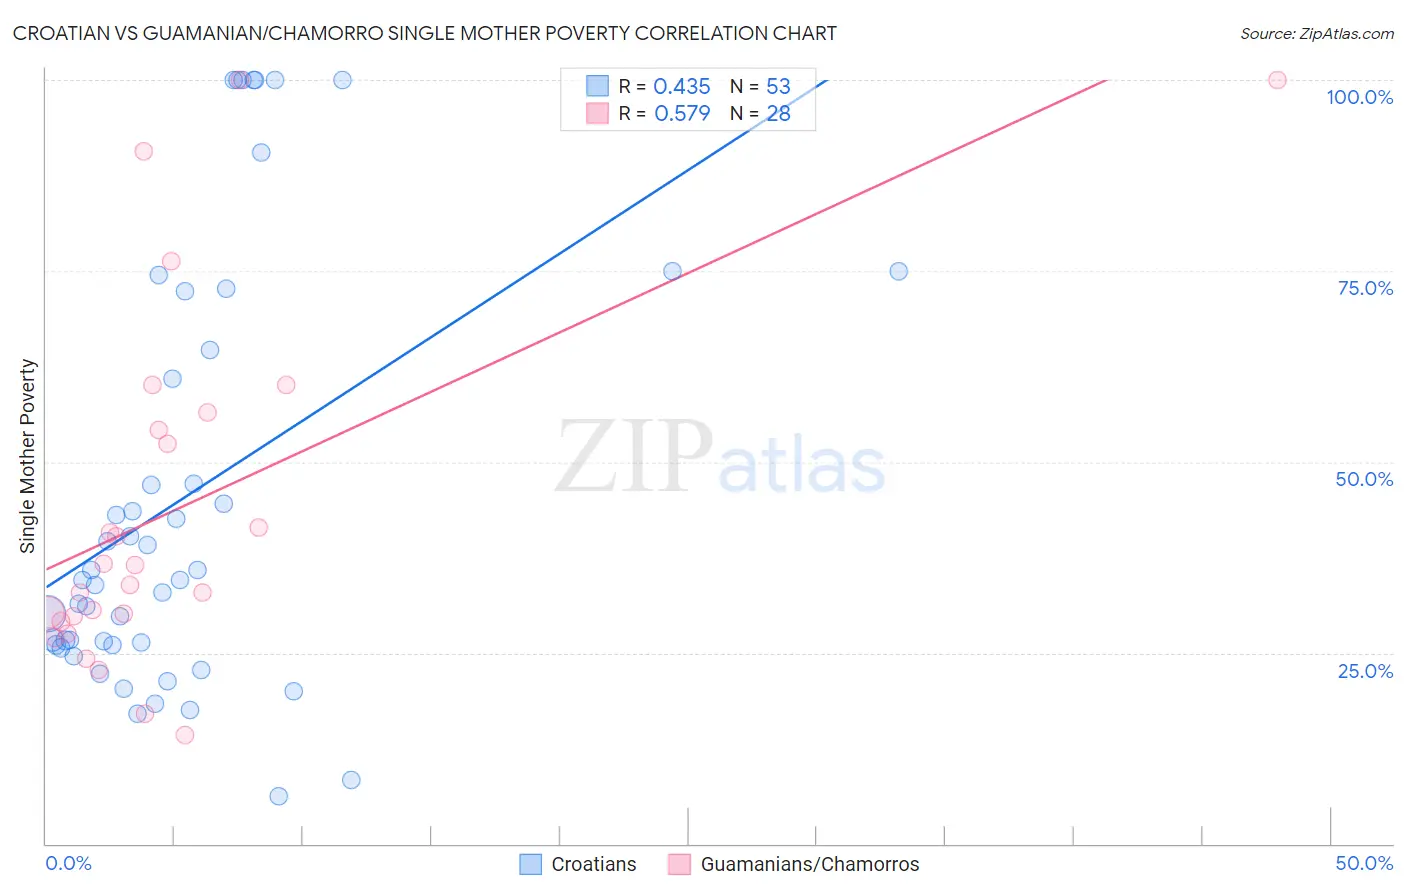 Croatian vs Guamanian/Chamorro Single Mother Poverty